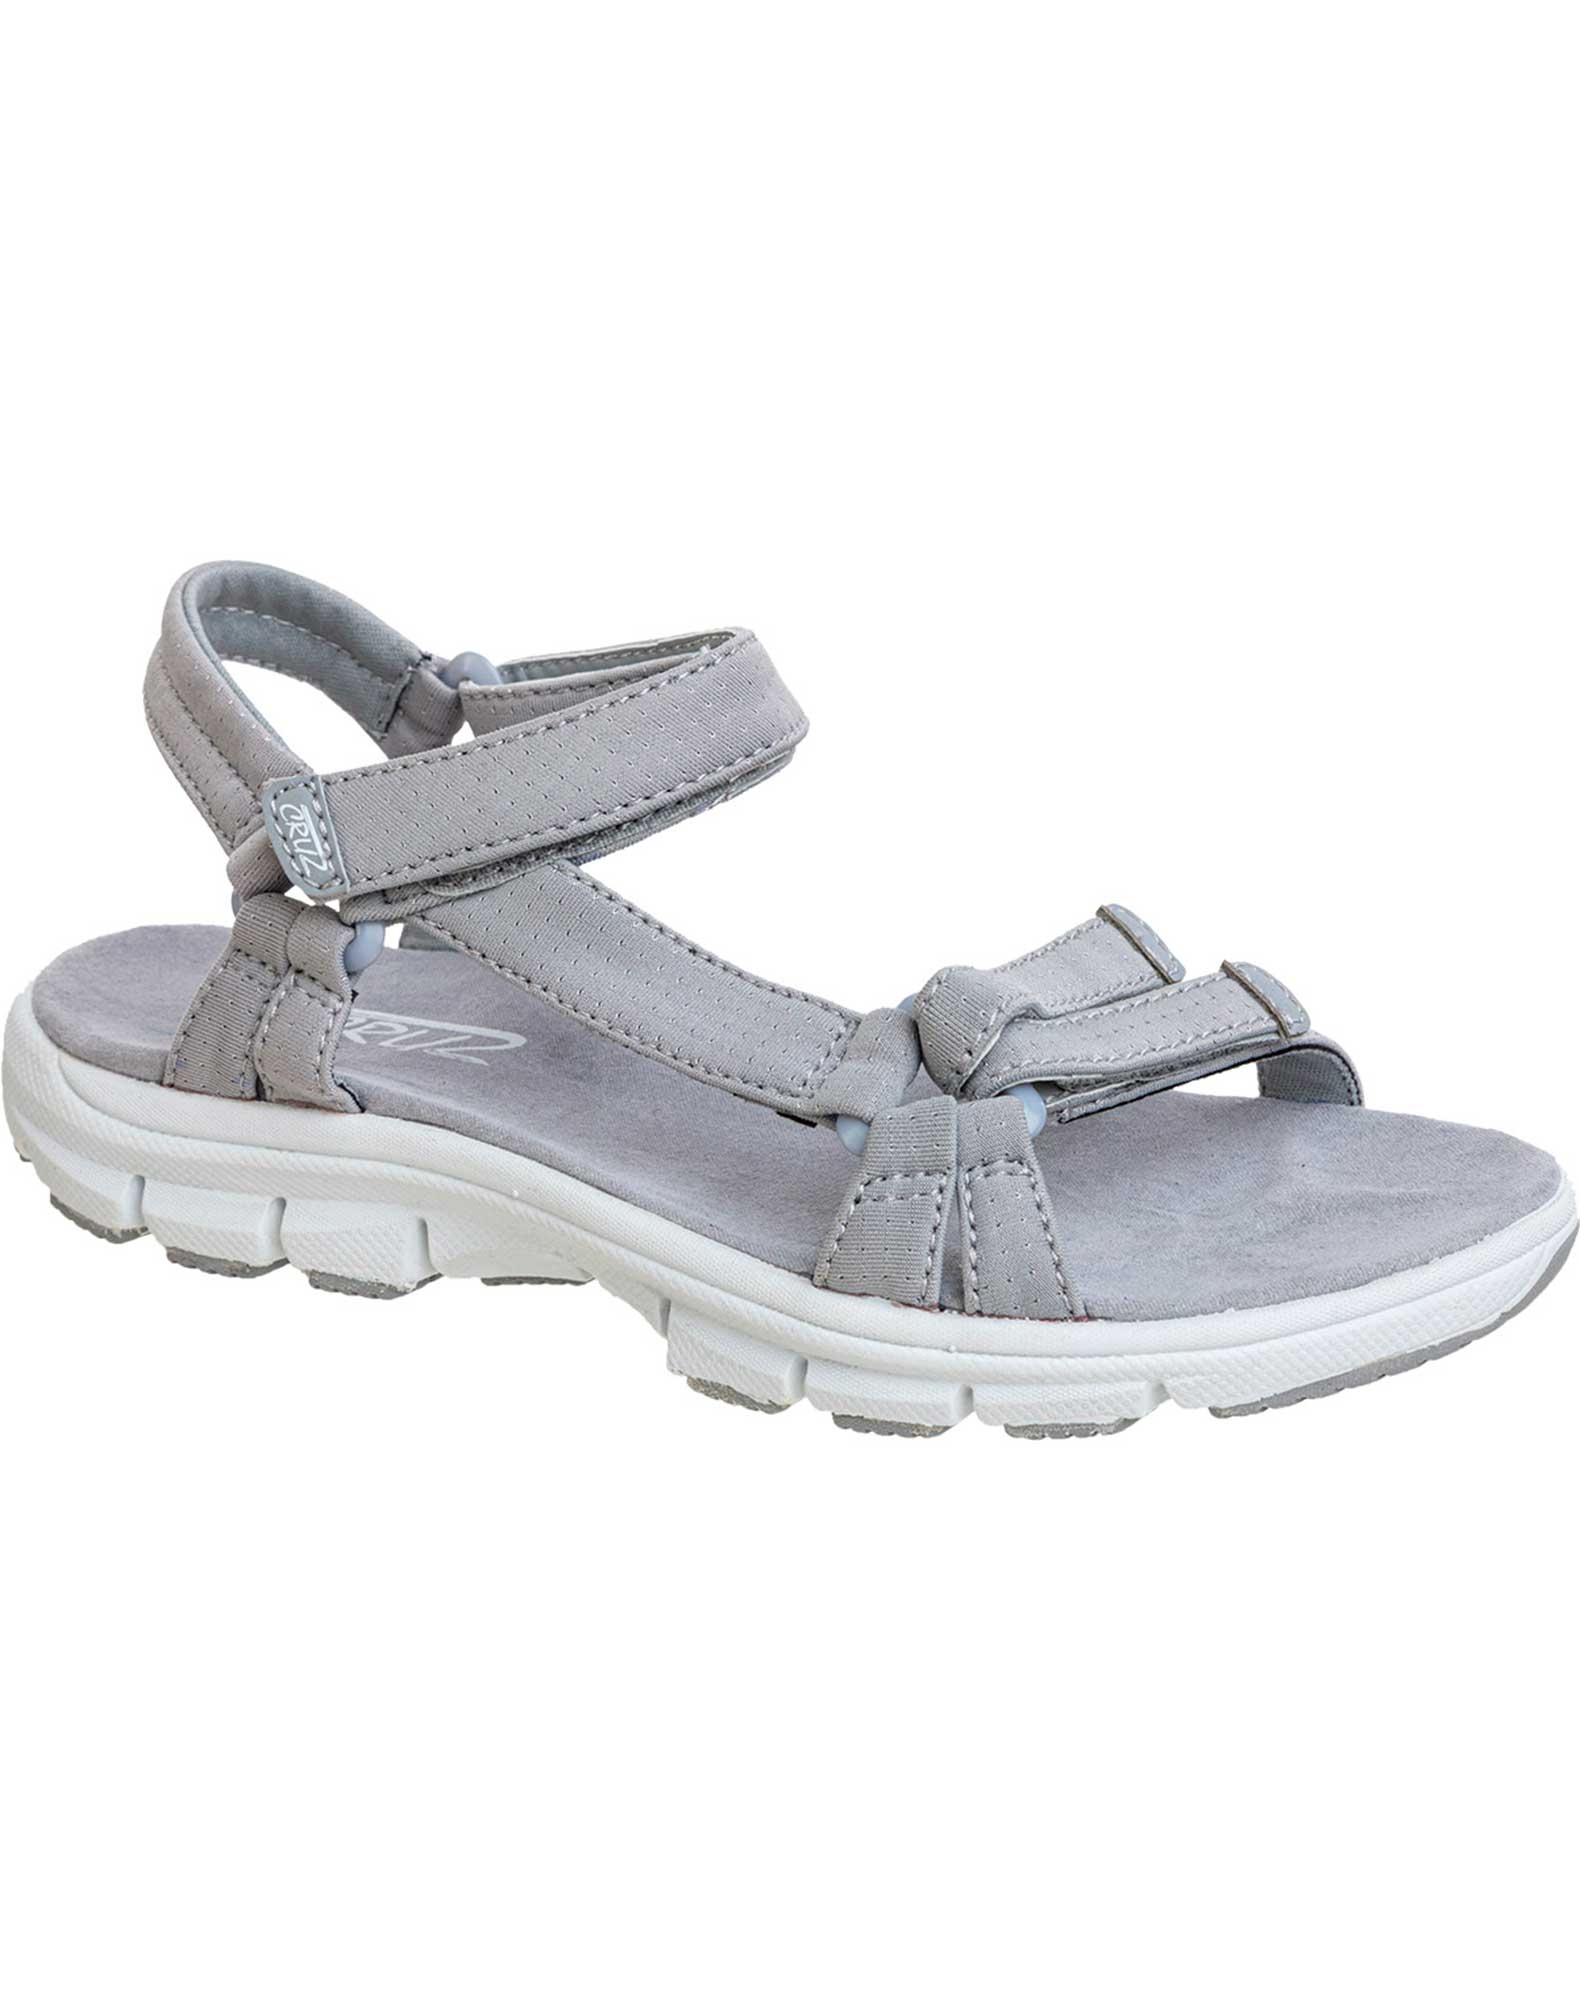 Køb Cruz sandaler til dame i grå